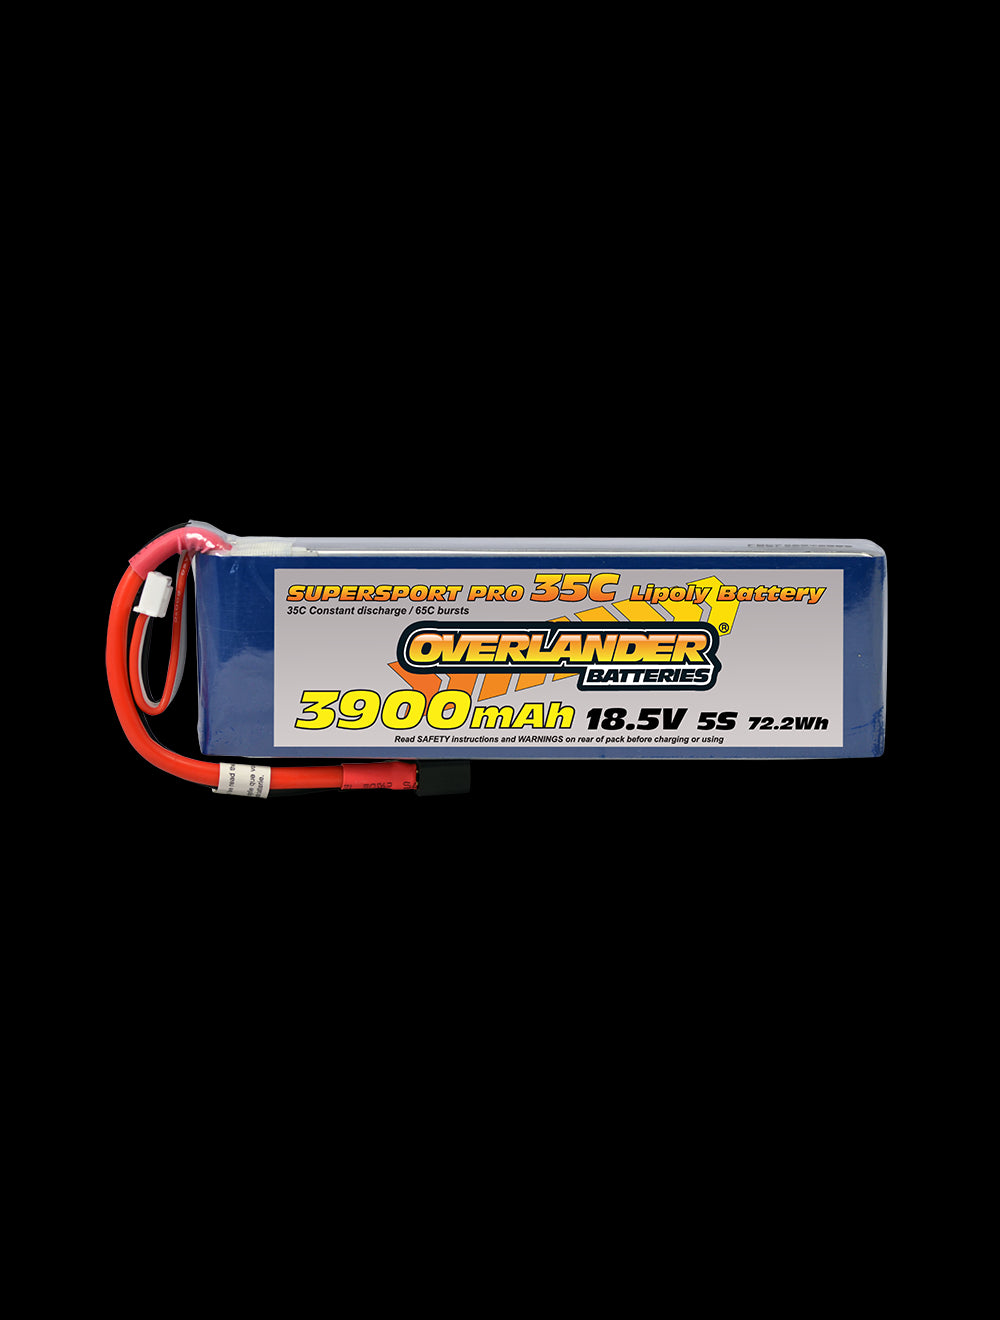 Overlander 3900mAh 18.5V 5S 35C Supersport Pro LiPo Battery - XT90 Connector 3191